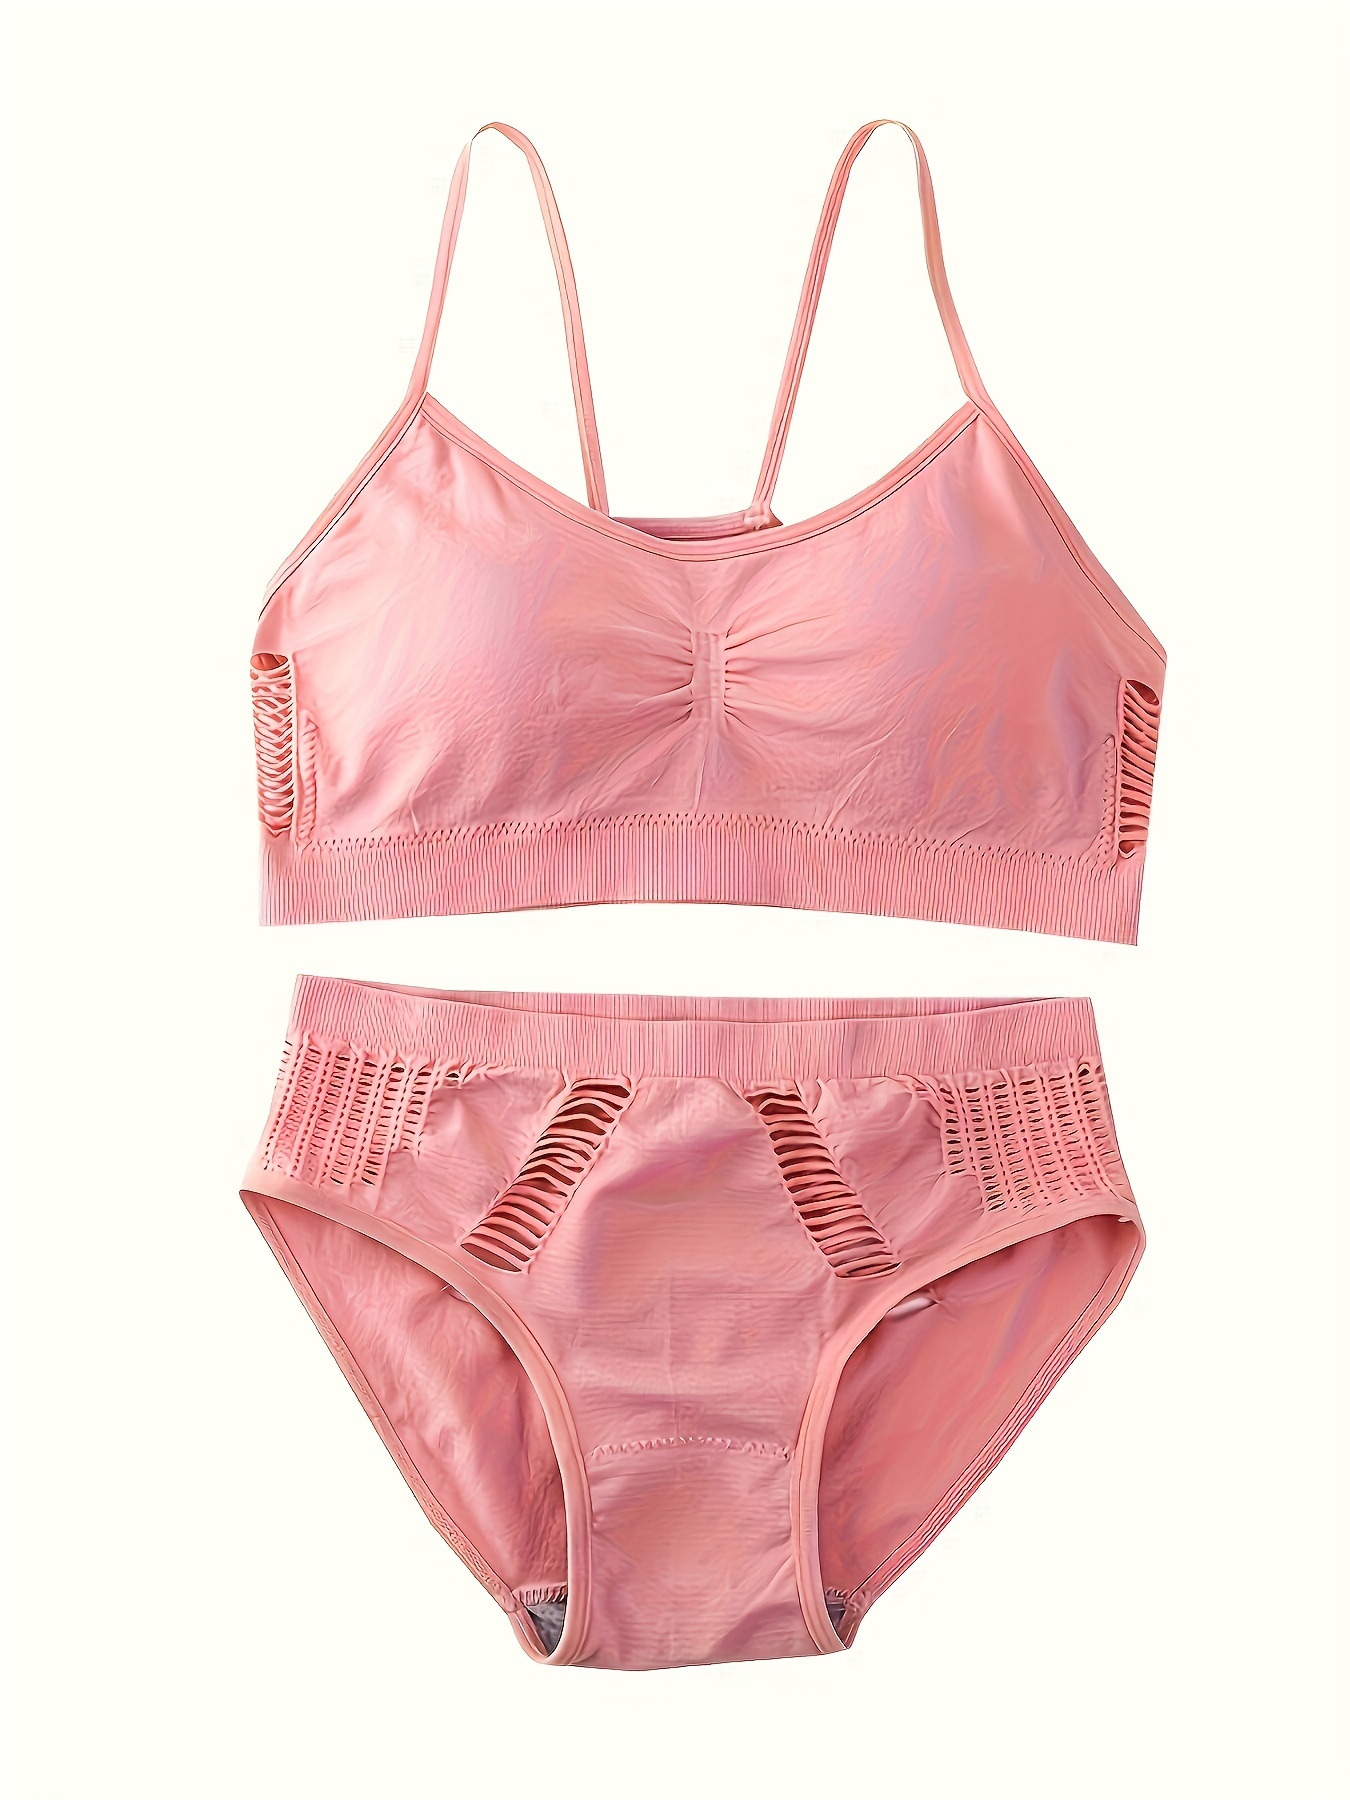 pink bra  Pink bra, Bra, Clothes design